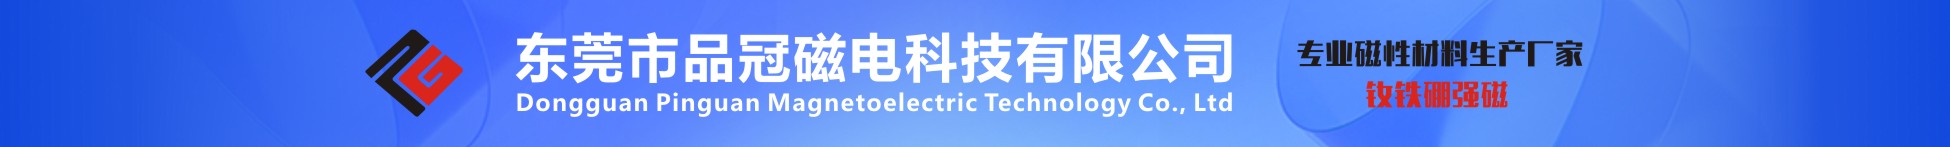 东莞市品冠磁电科技有限公司